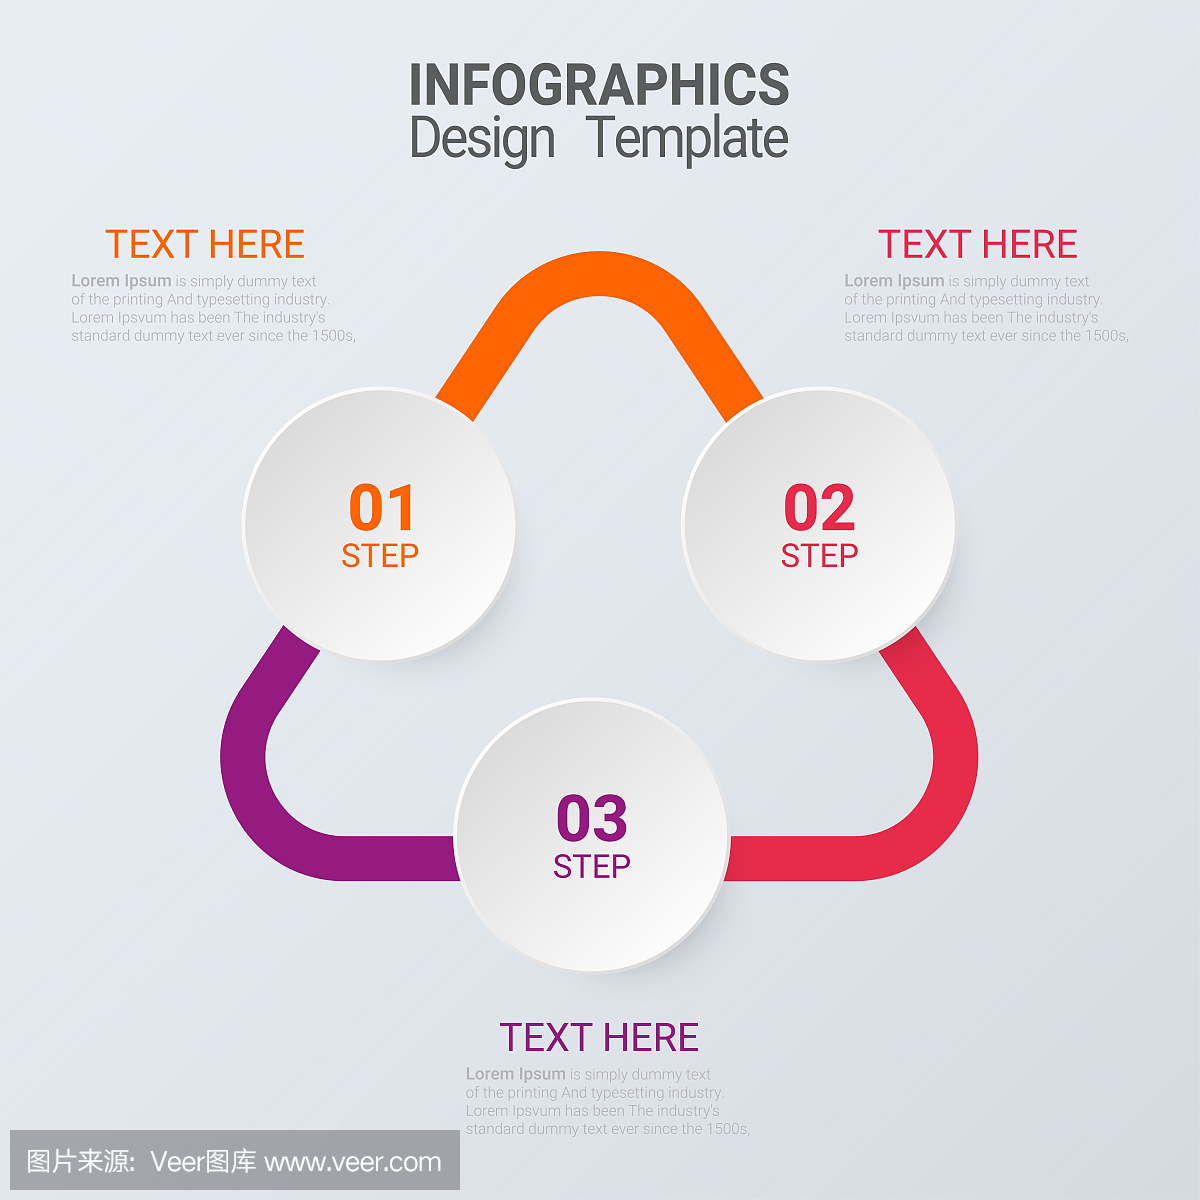 三个步骤信息图。用于演示和培训的矢量业务模板。